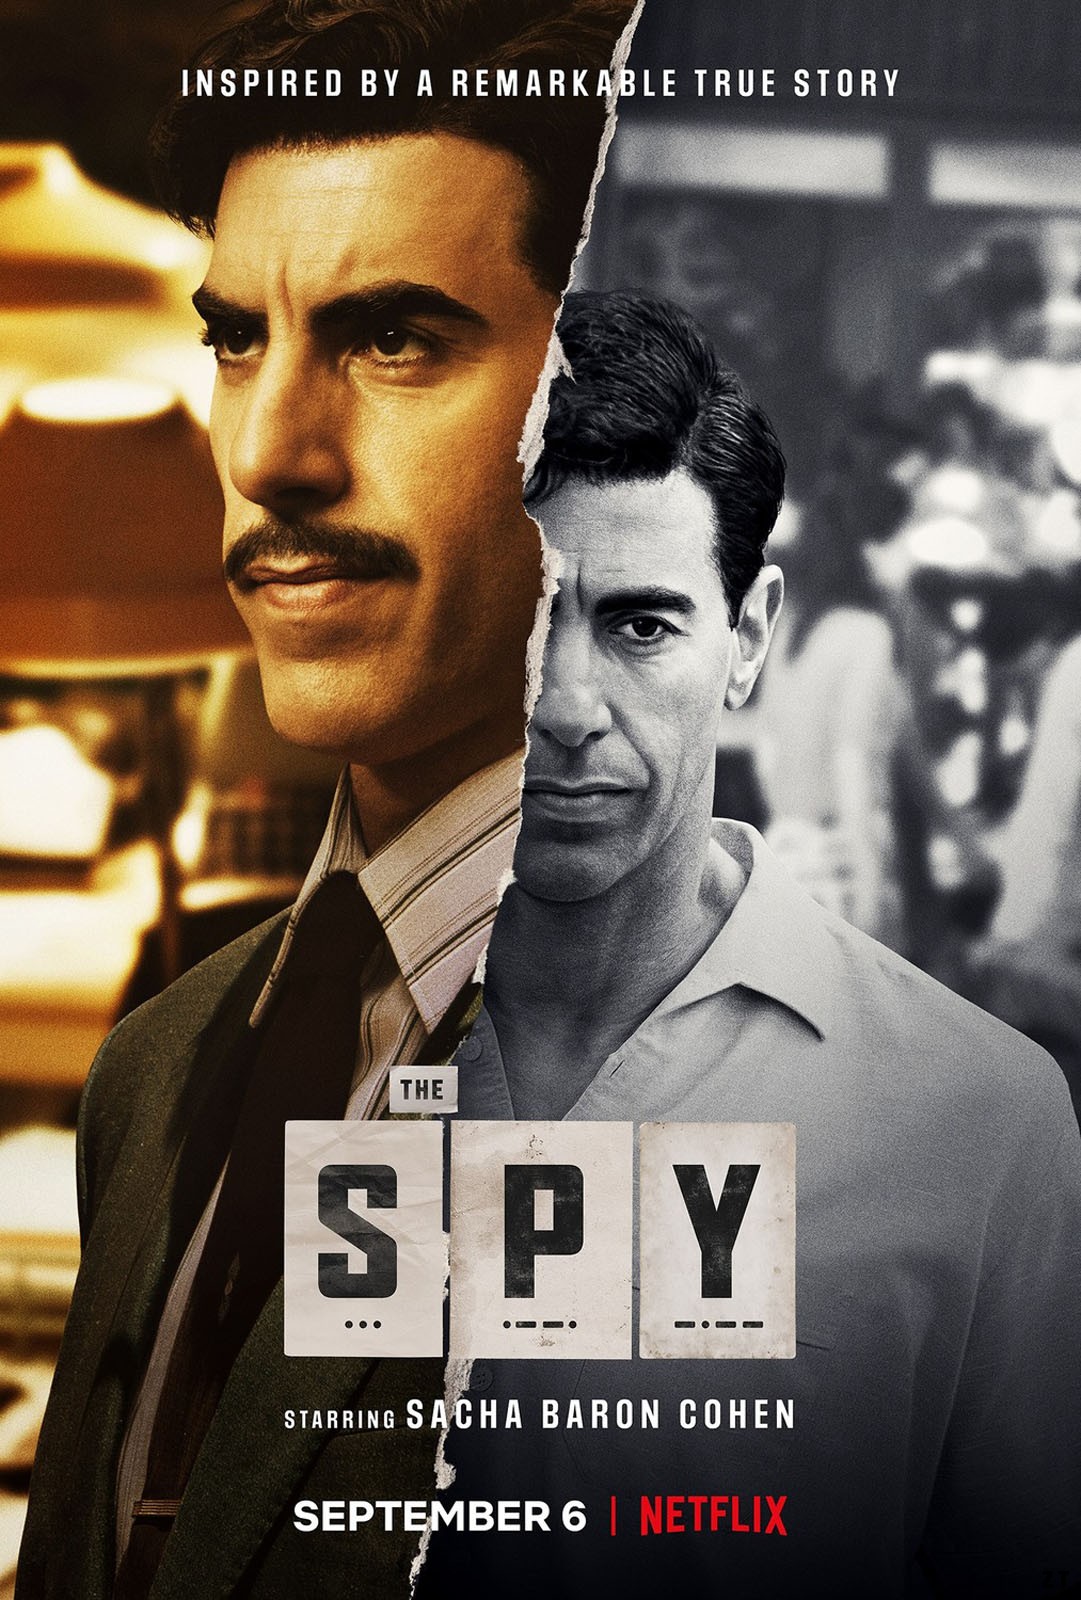 The Spy S01E04 VOSTFR HDTV